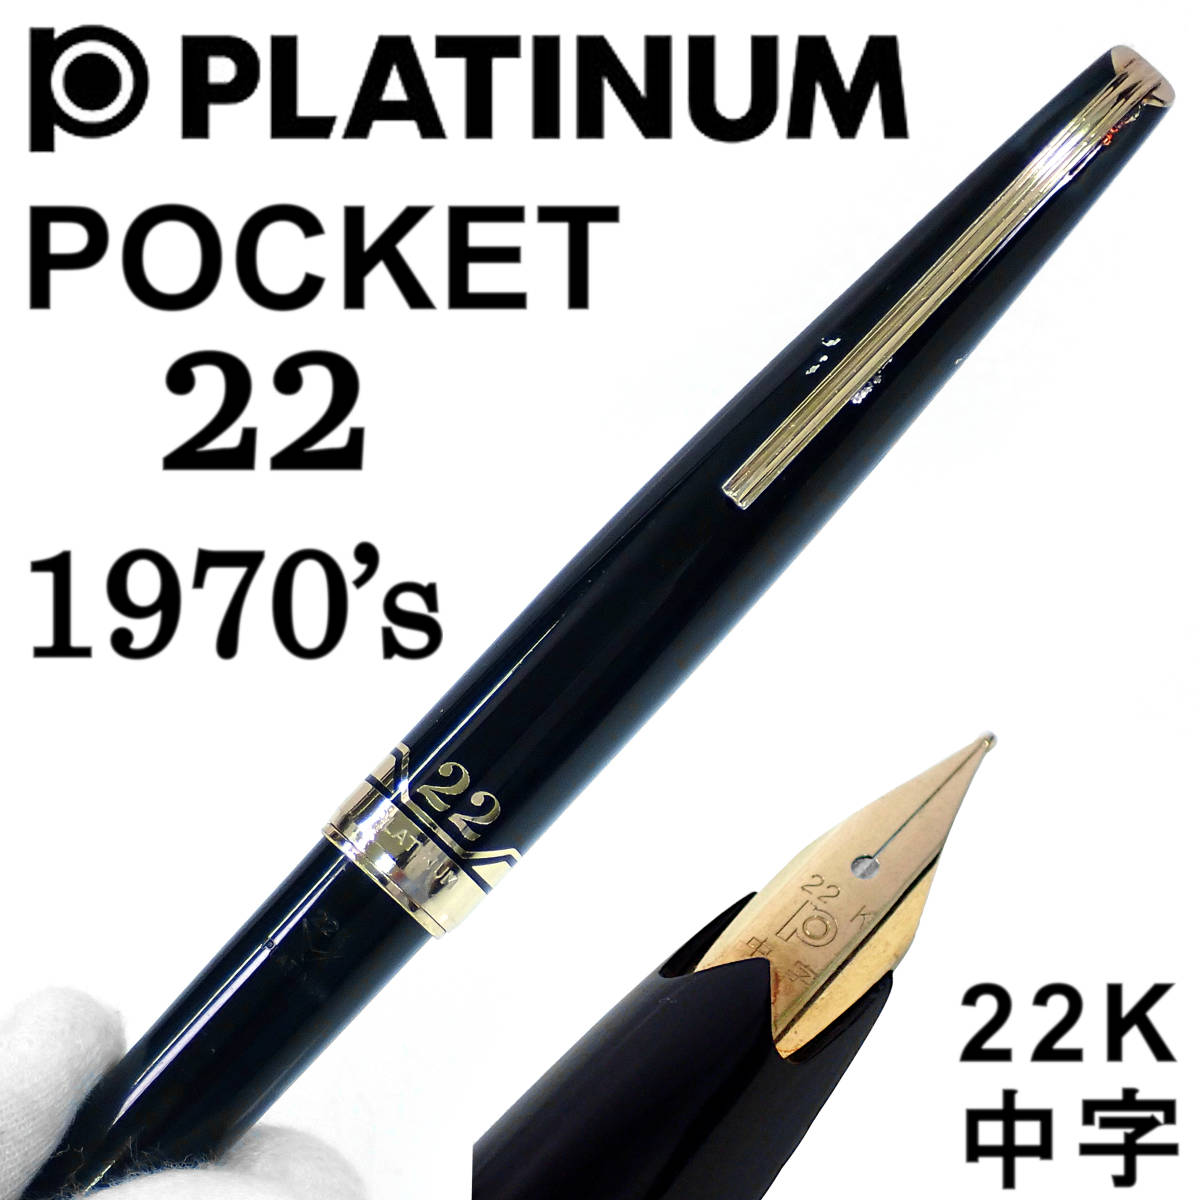 売れ筋新商品 ポケット プラチナ萬年筆 1970's 22K 22 POKET PLATINUM 